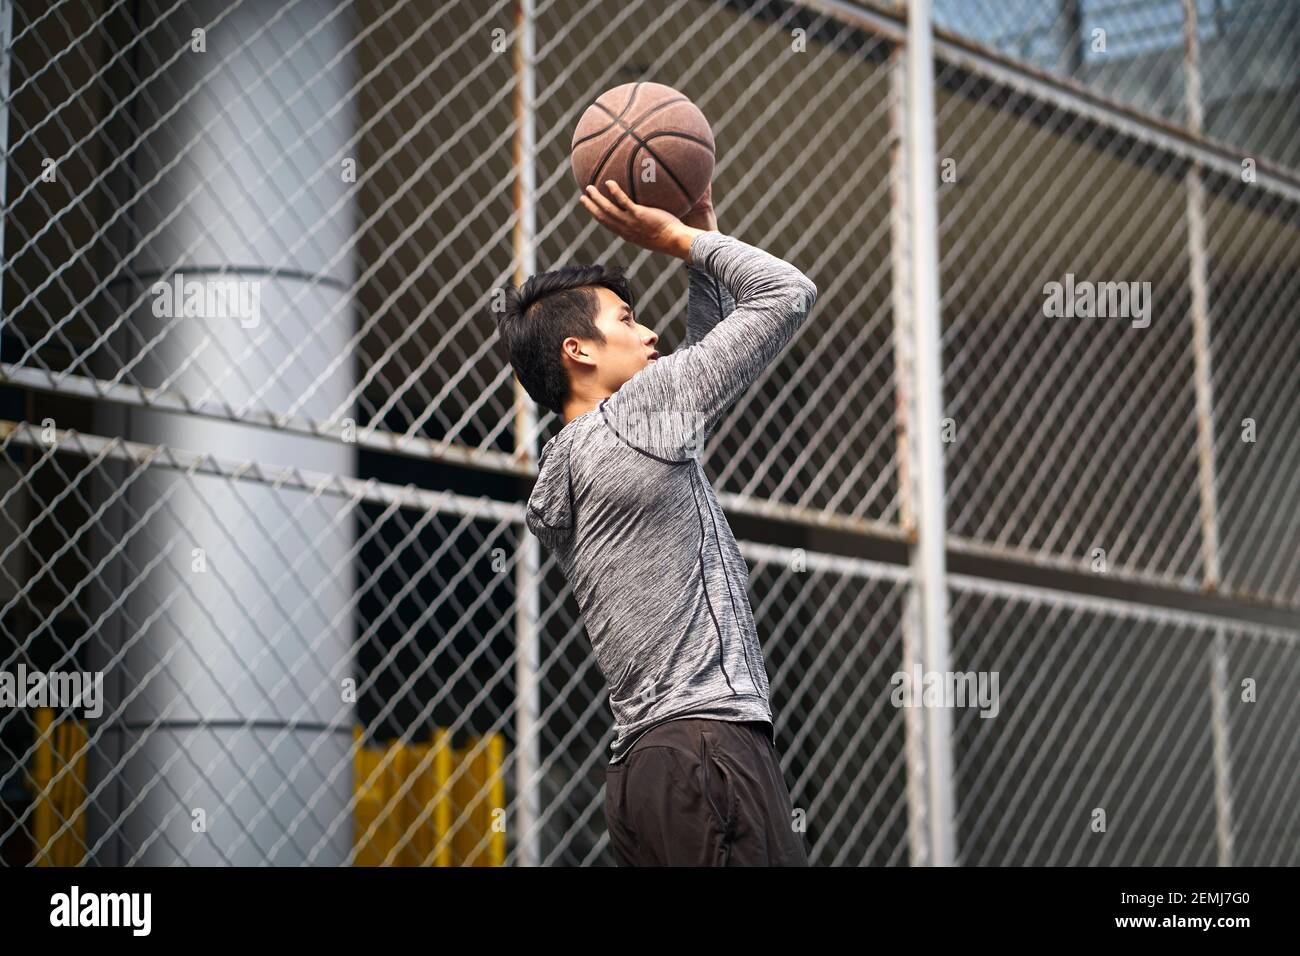 un jeune joueur de basket-ball asiatique prend un coup de volant une cour extérieure clôturée Banque D'Images